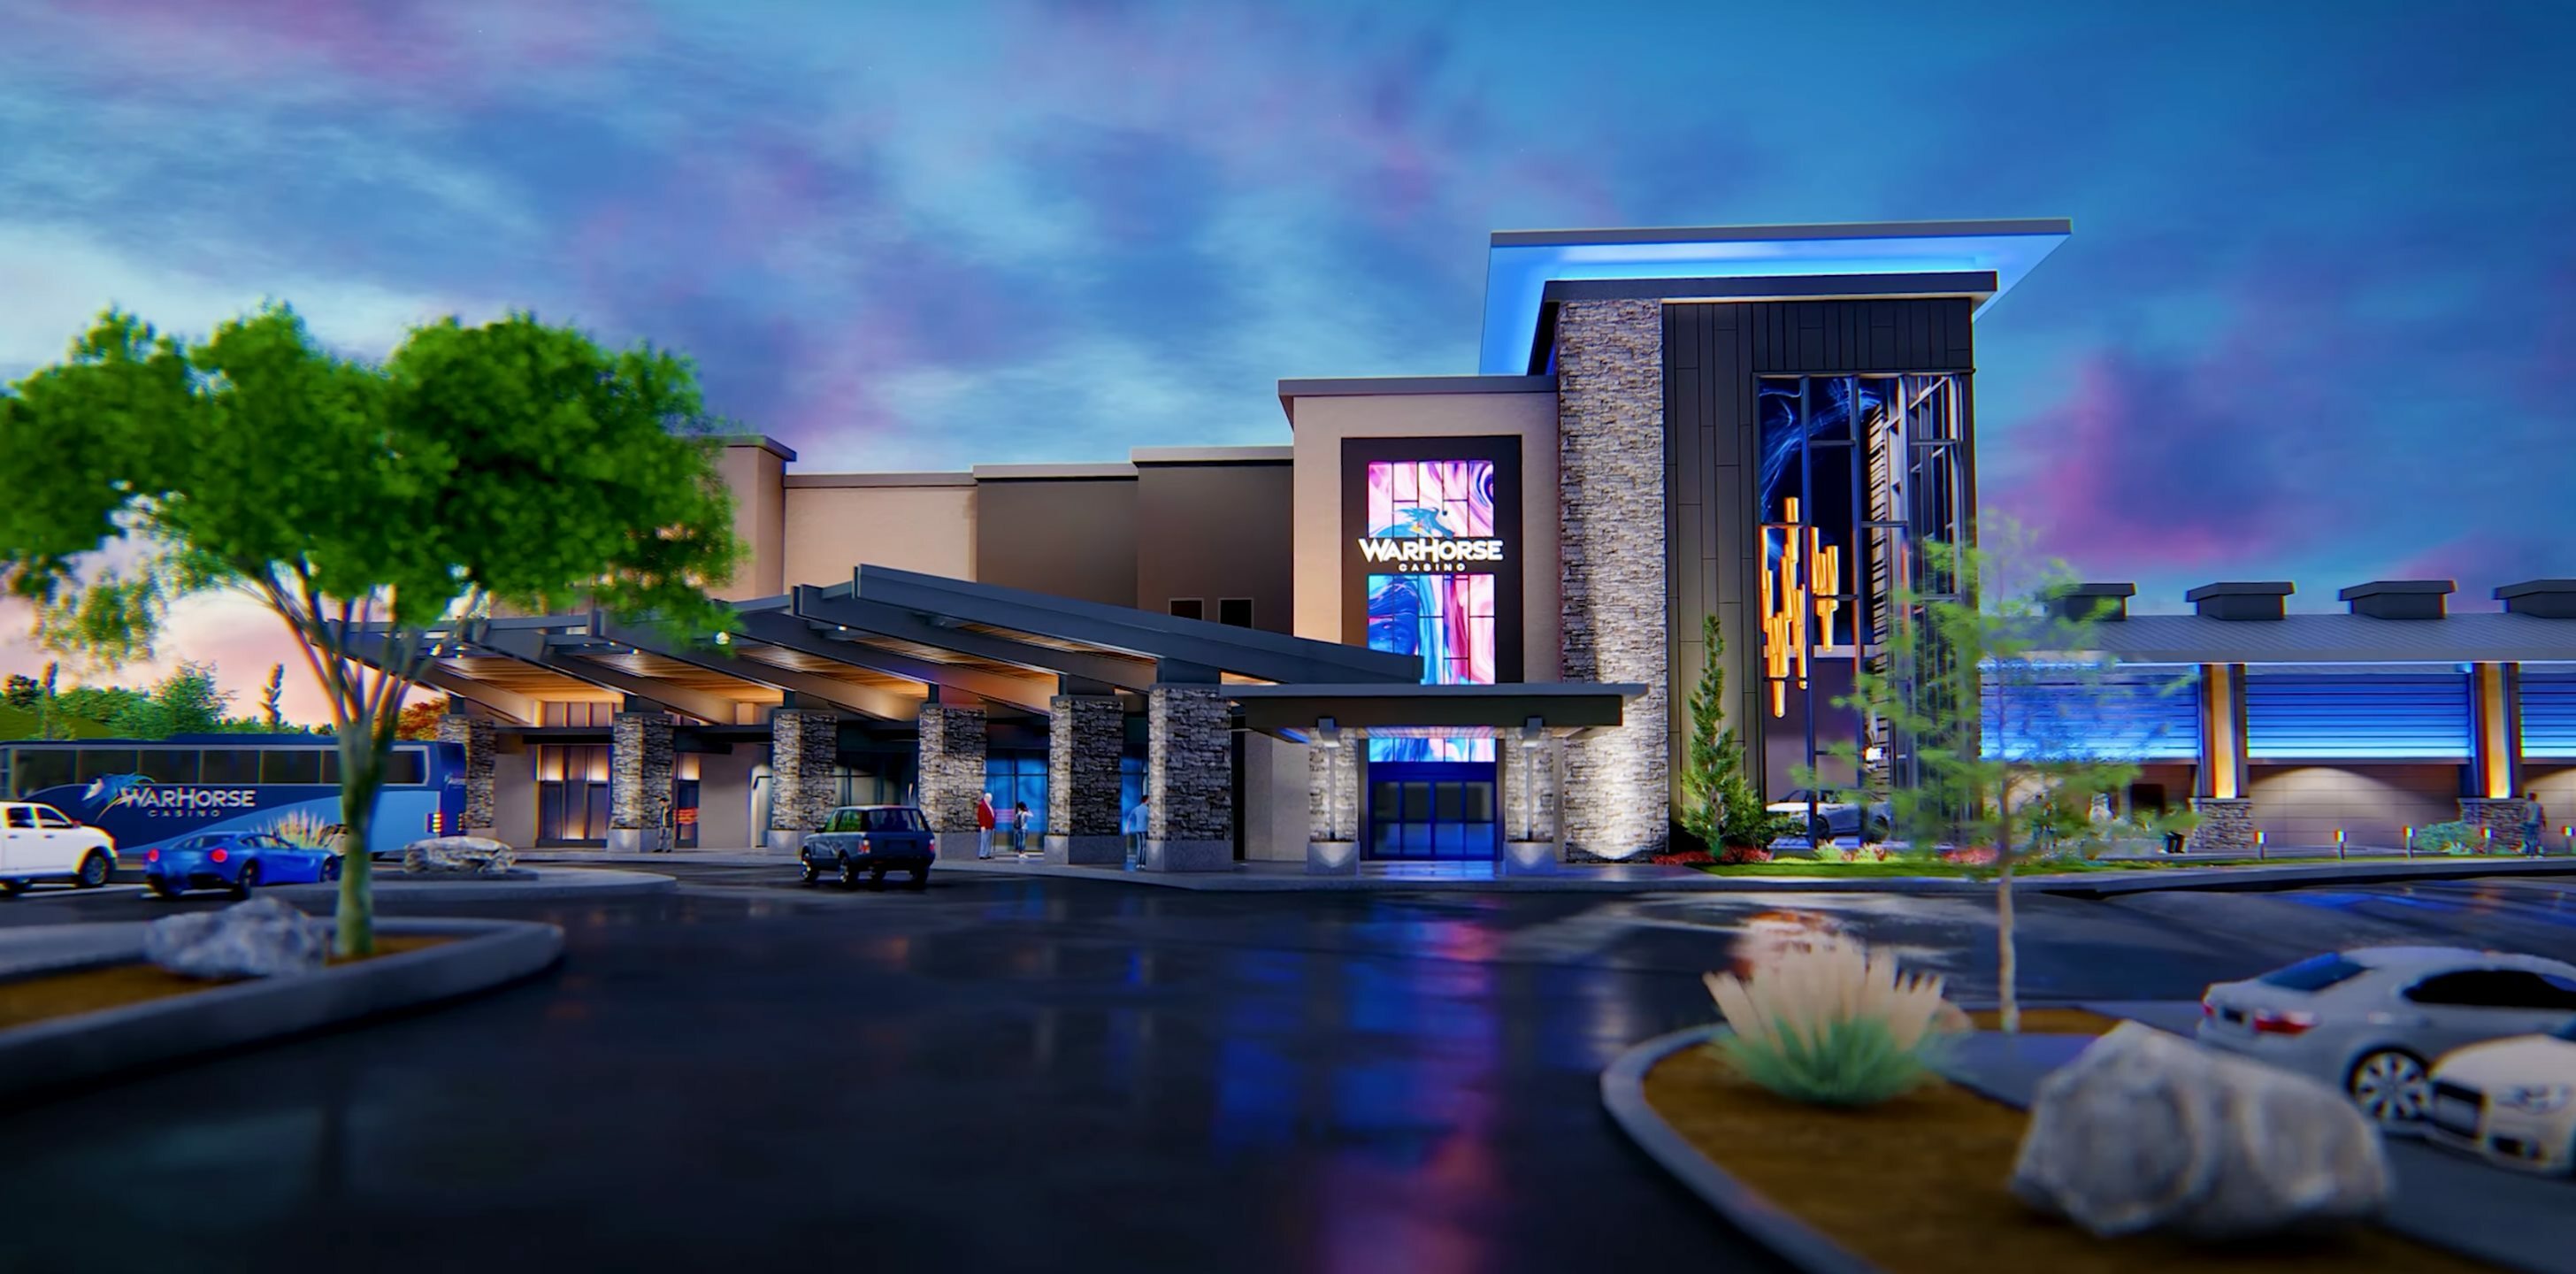 Photo of WarHorse Casino Lincoln, Lincoln, NE